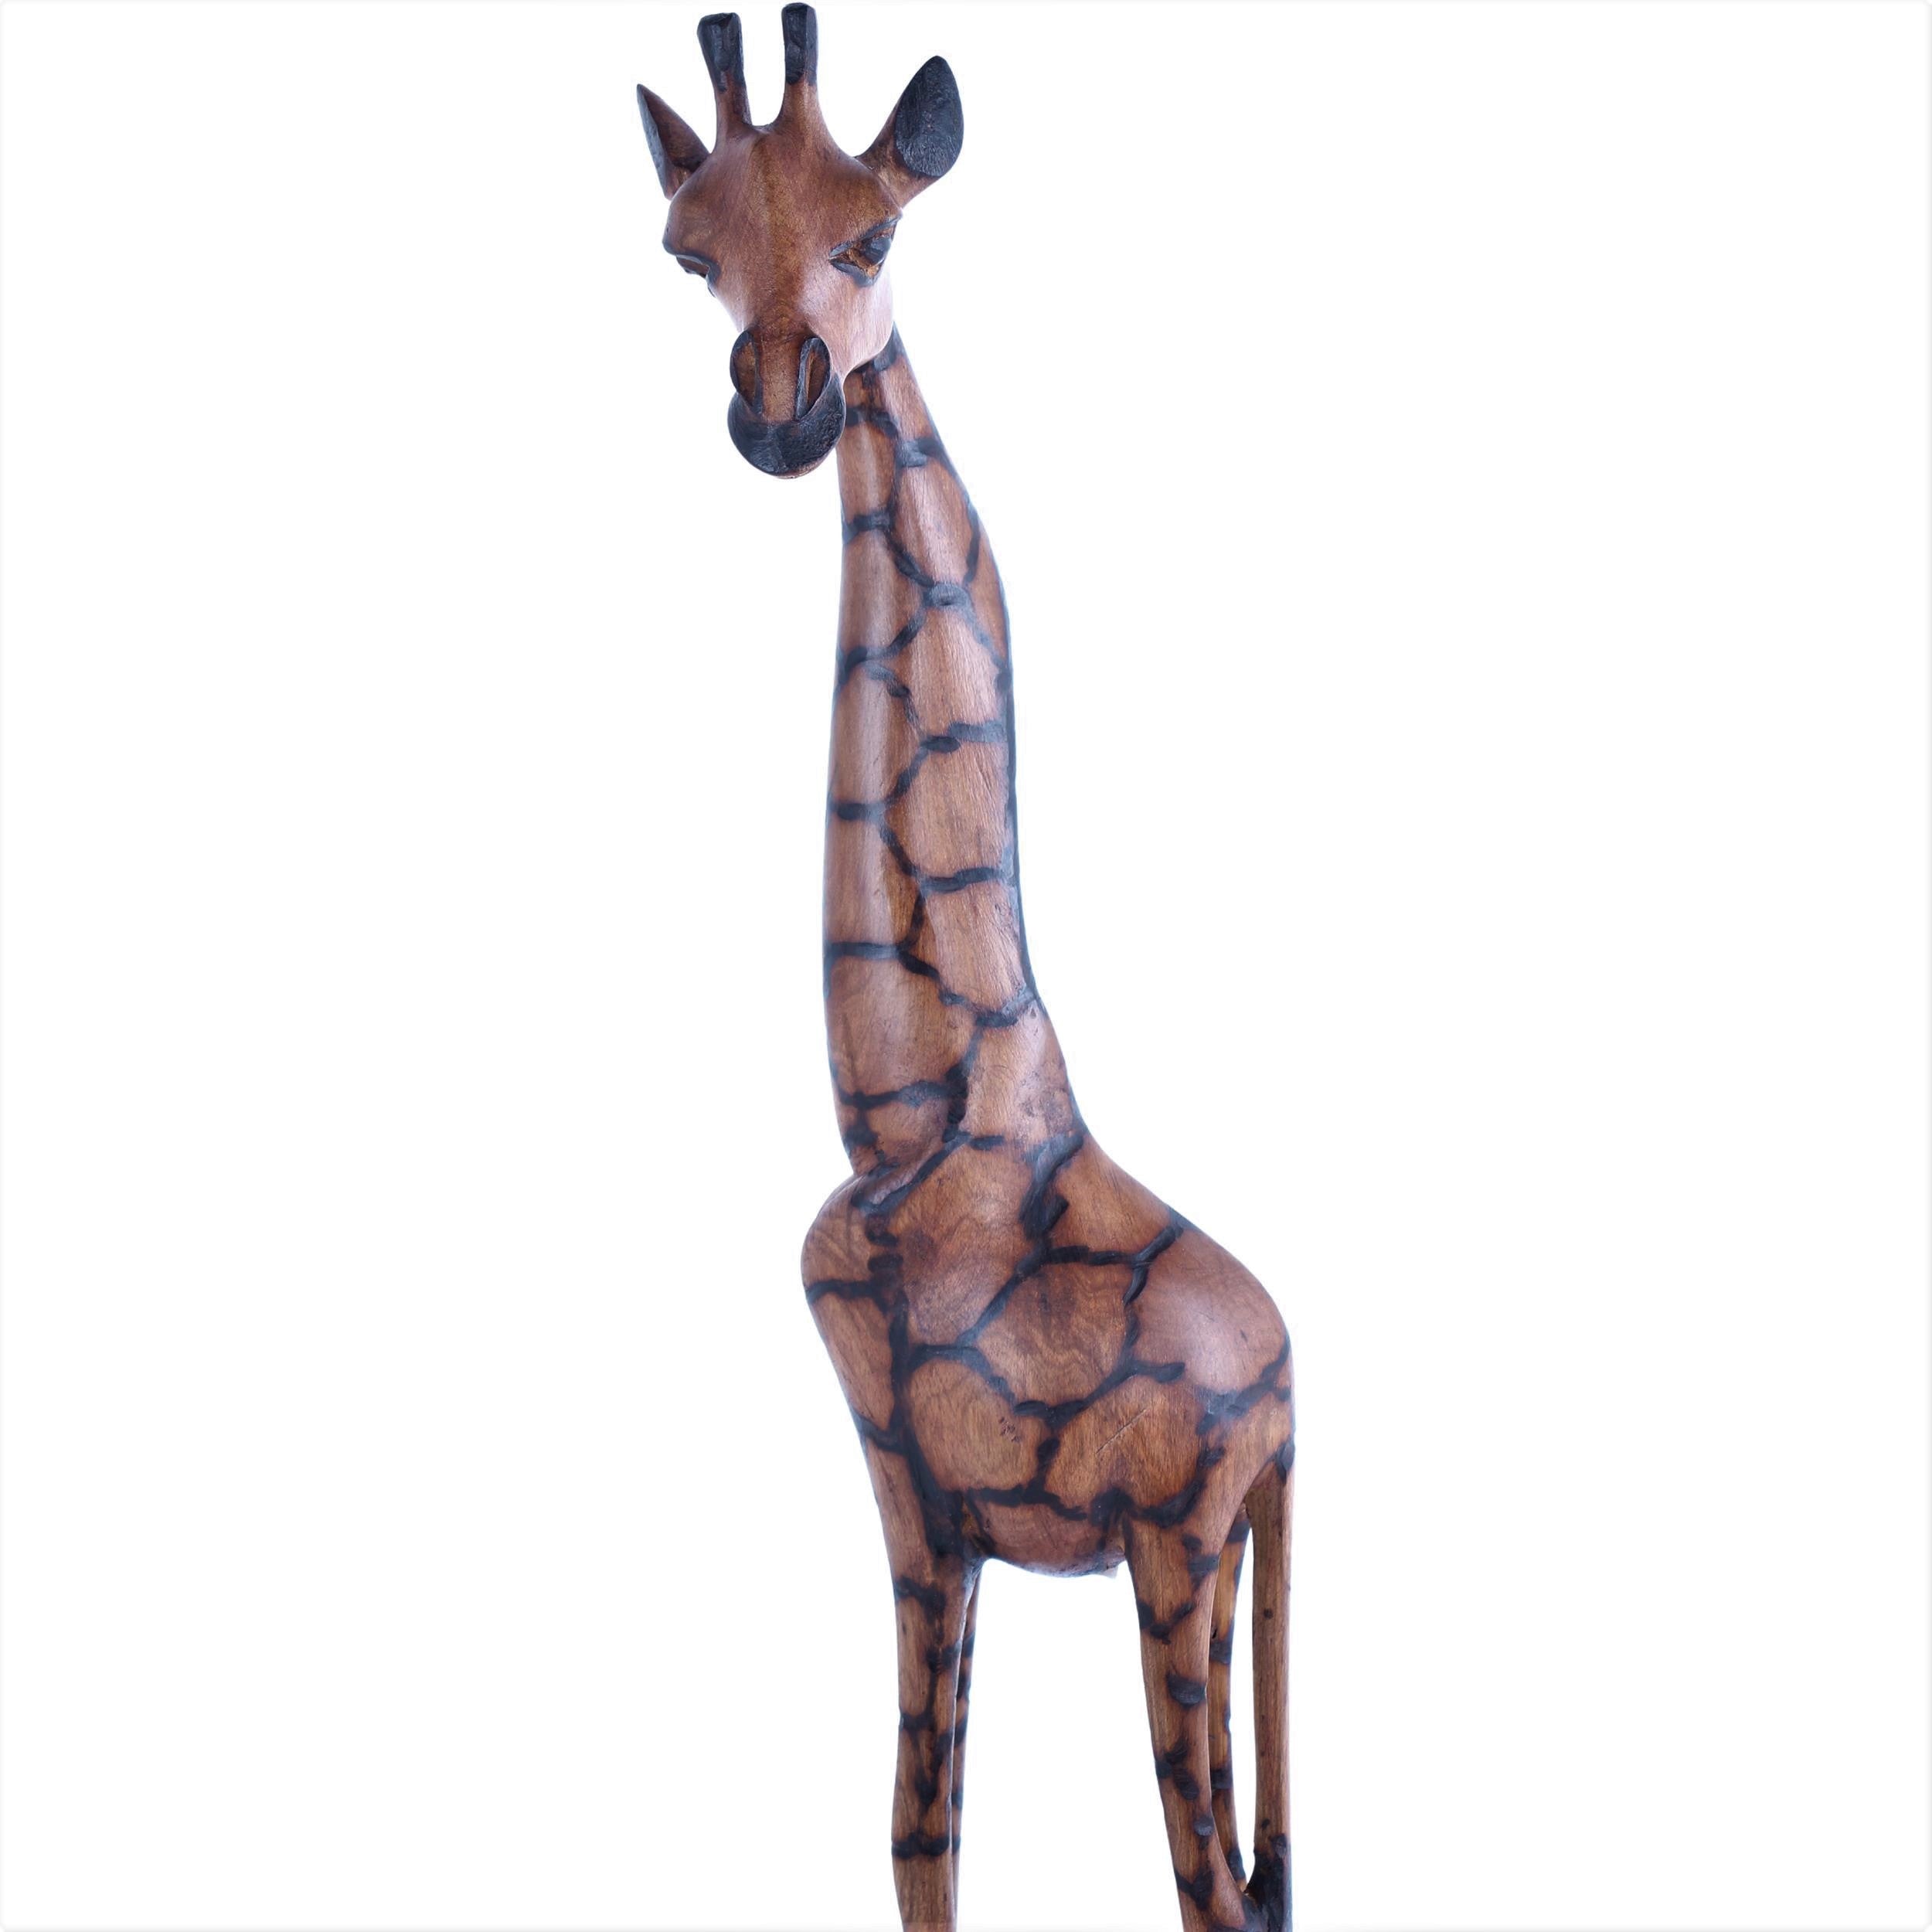 Ndebele/Matabele Tribe Wooden Giraffes ~20" Tall - Wooden Giraffes